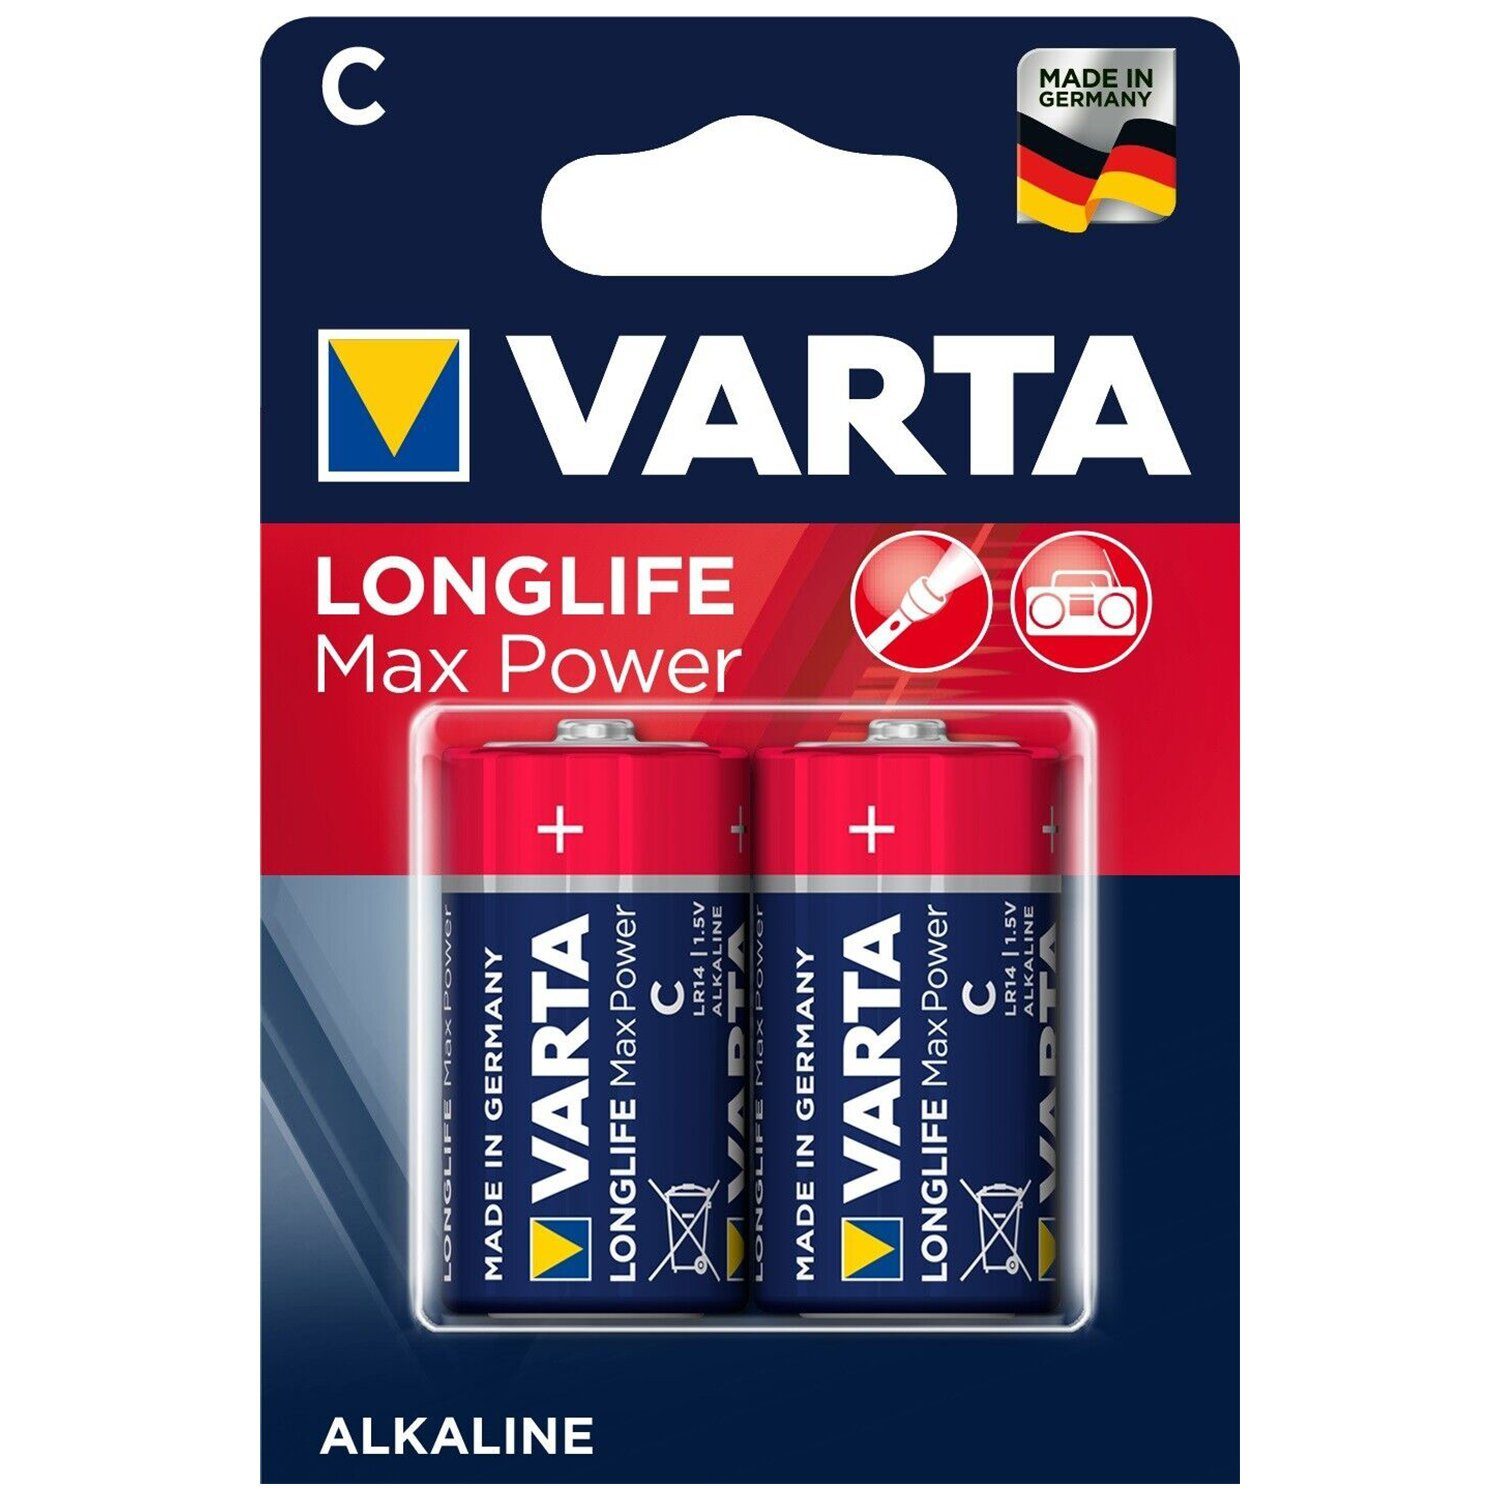 VARTA VARTA Longlife Max Power 4714 C 2er Blister Macro Einwegbatterie Batterie